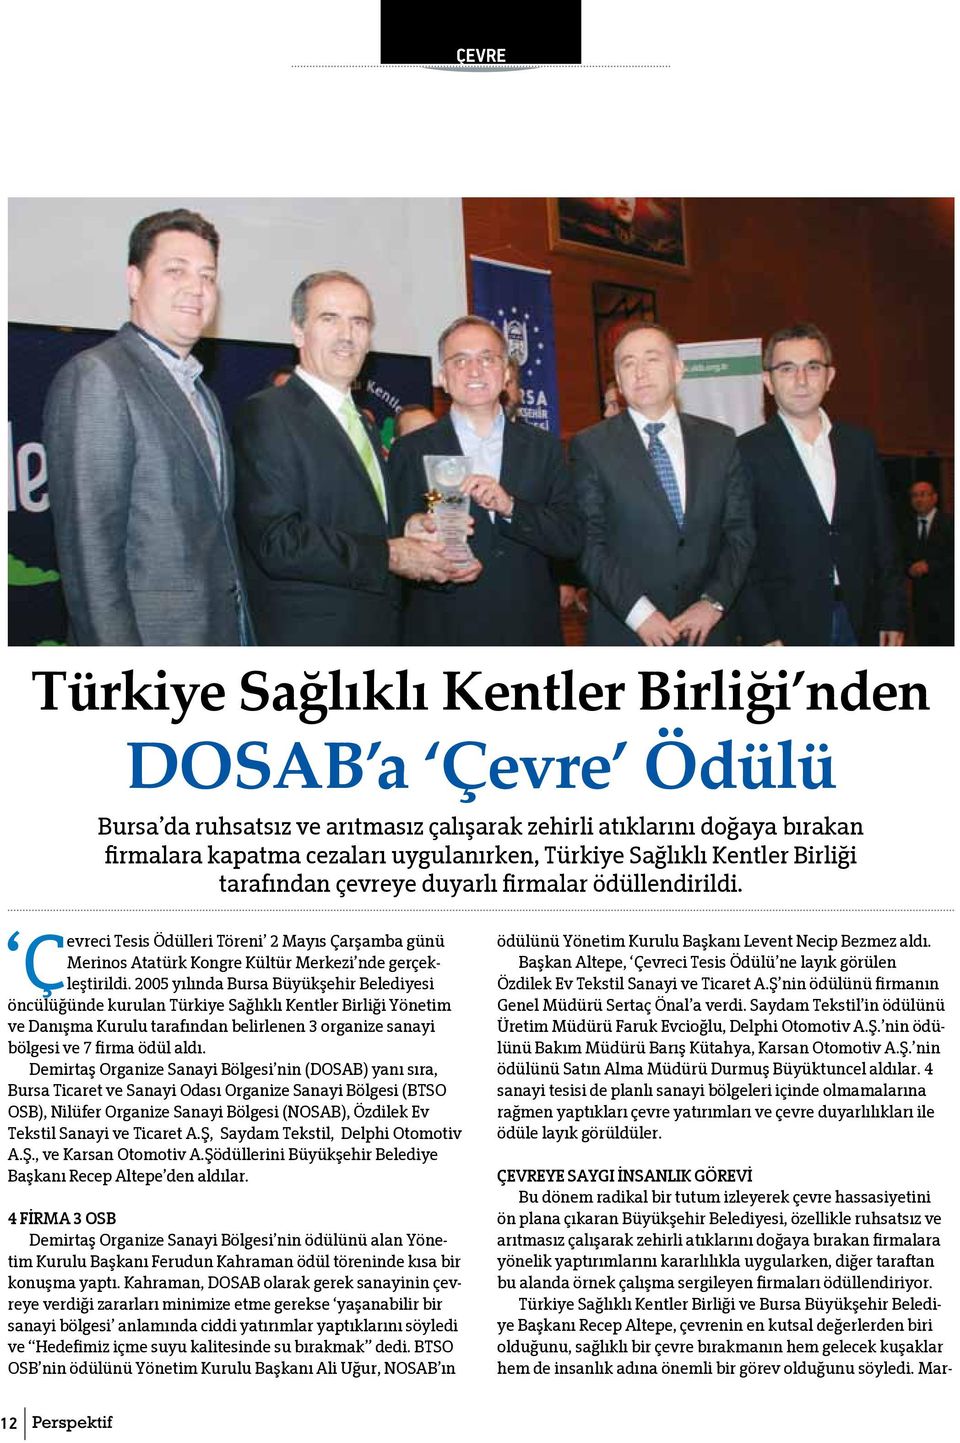 2005 yılında Bursa Büyükşehir Belediyesi Cevreci öncülüğünde kurulan Türkiye Sağlıklı Kentler Birliği Yönetim ve Danışma Kurulu tarafından belirlenen 3 organize sanayi bölgesi ve 7 firma ödül aldı.